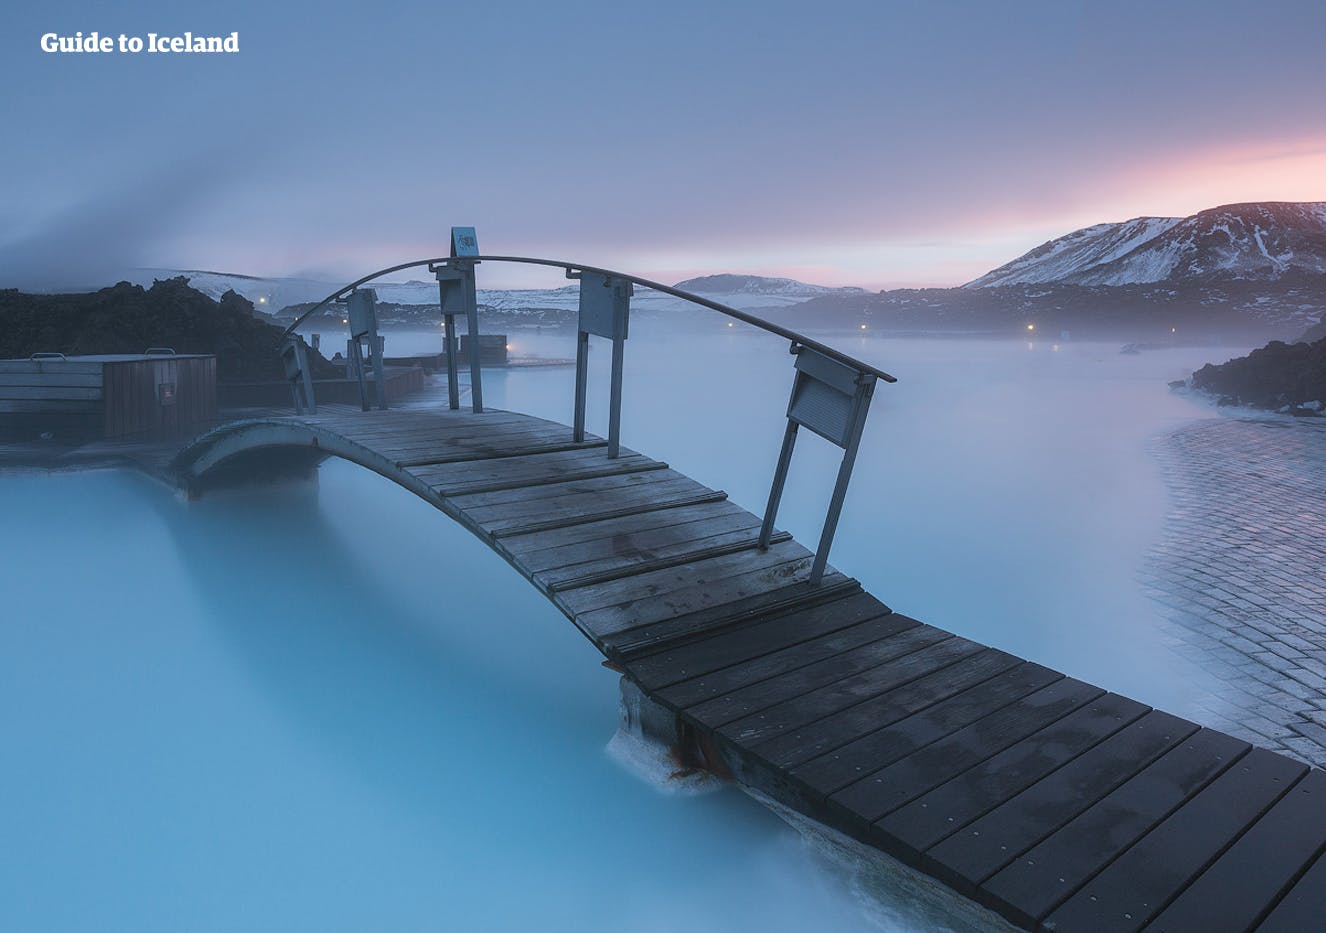 Finisci l'avventura in Islanda con un tuffo nella spa geotermica Laguna Blu.